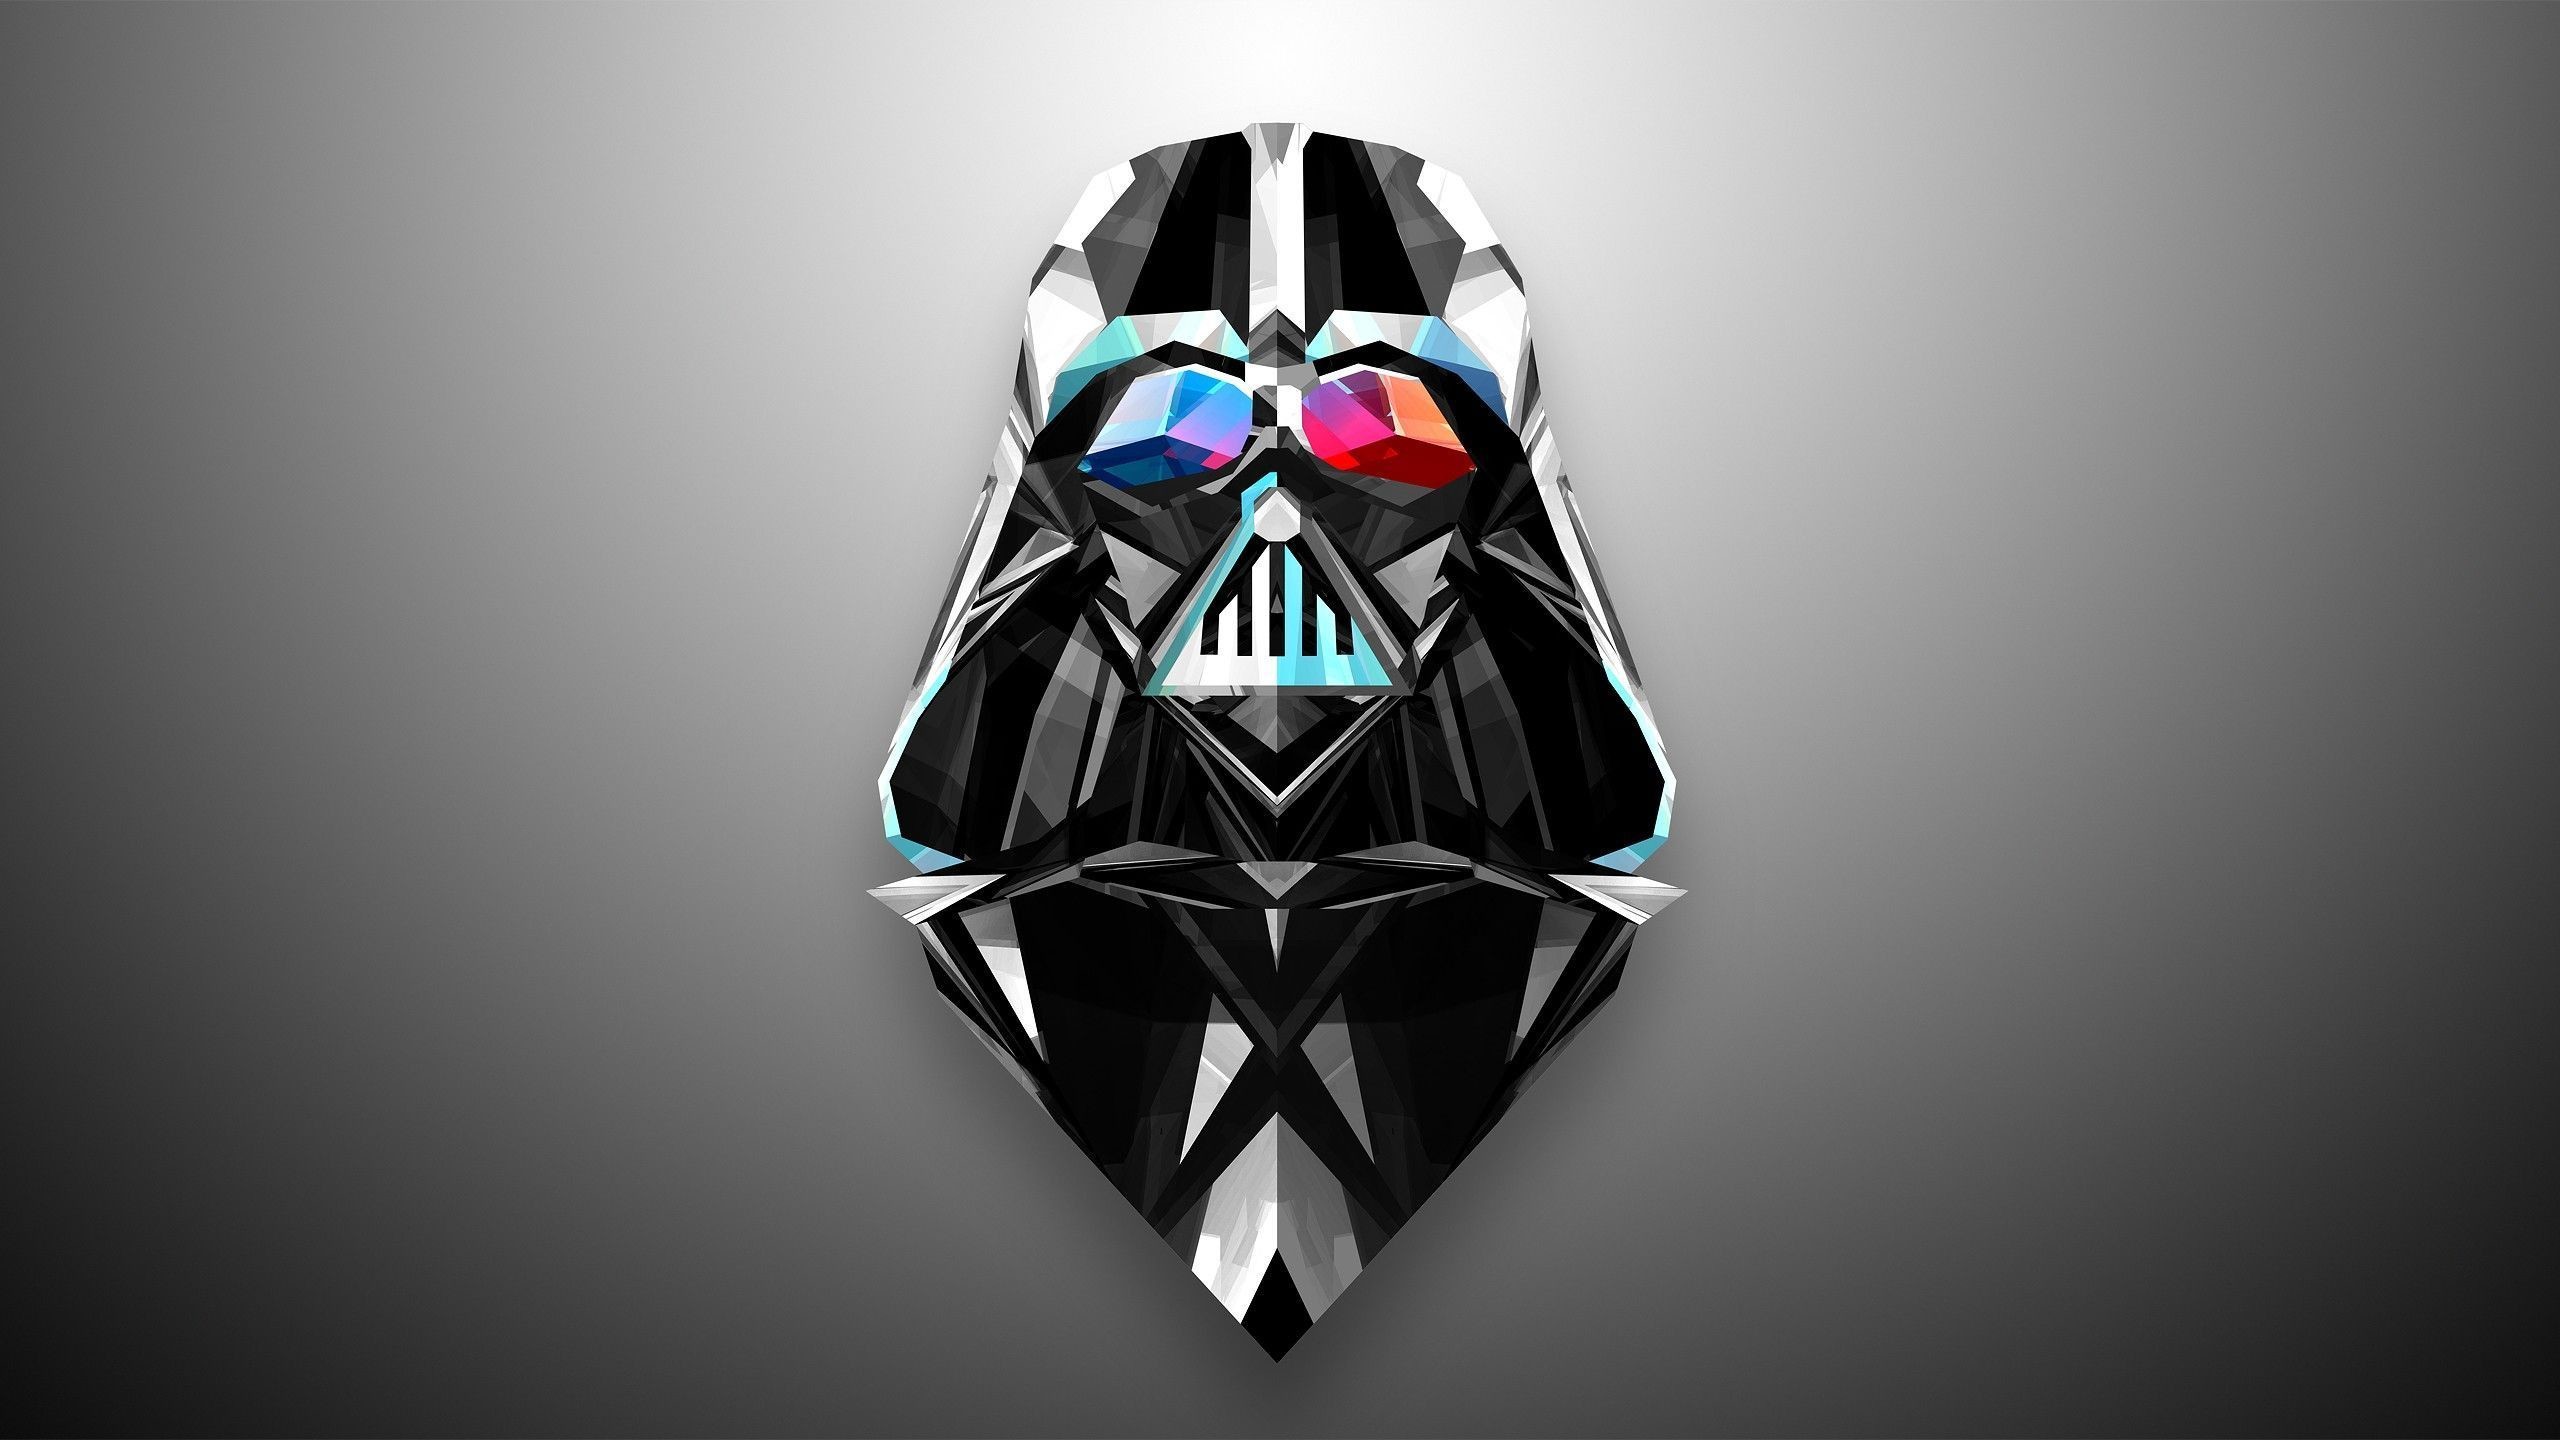 2560x1440 174 Darth Vader HD Wallpapers